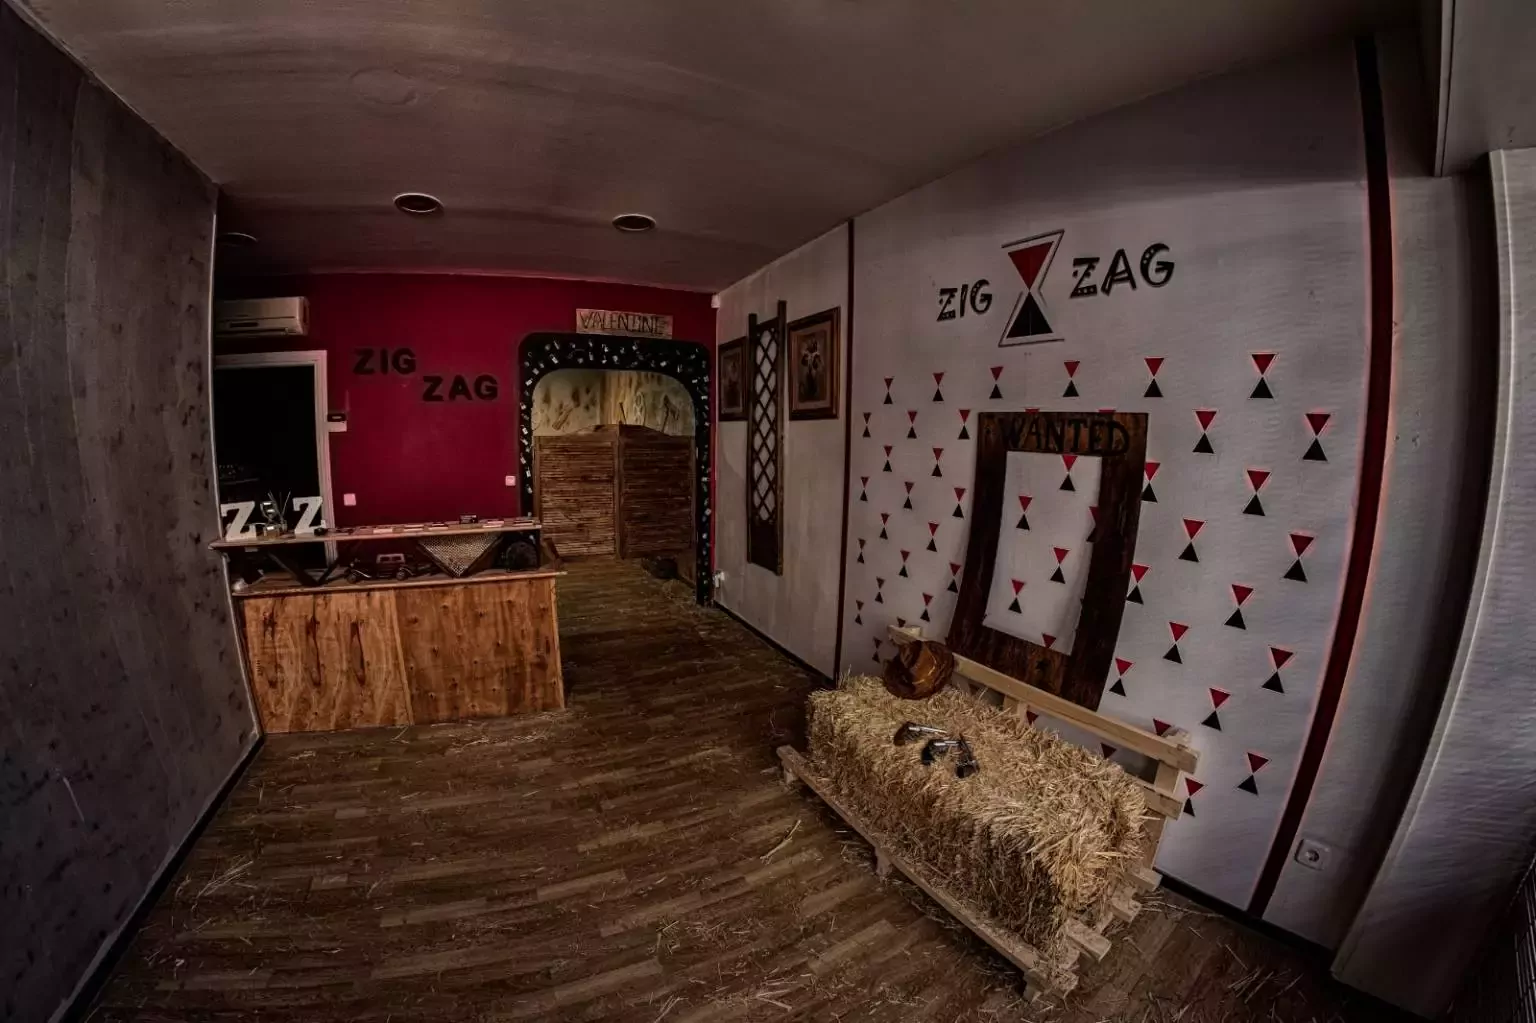 5. Zig Zag  - Sala de Escape en Madrid